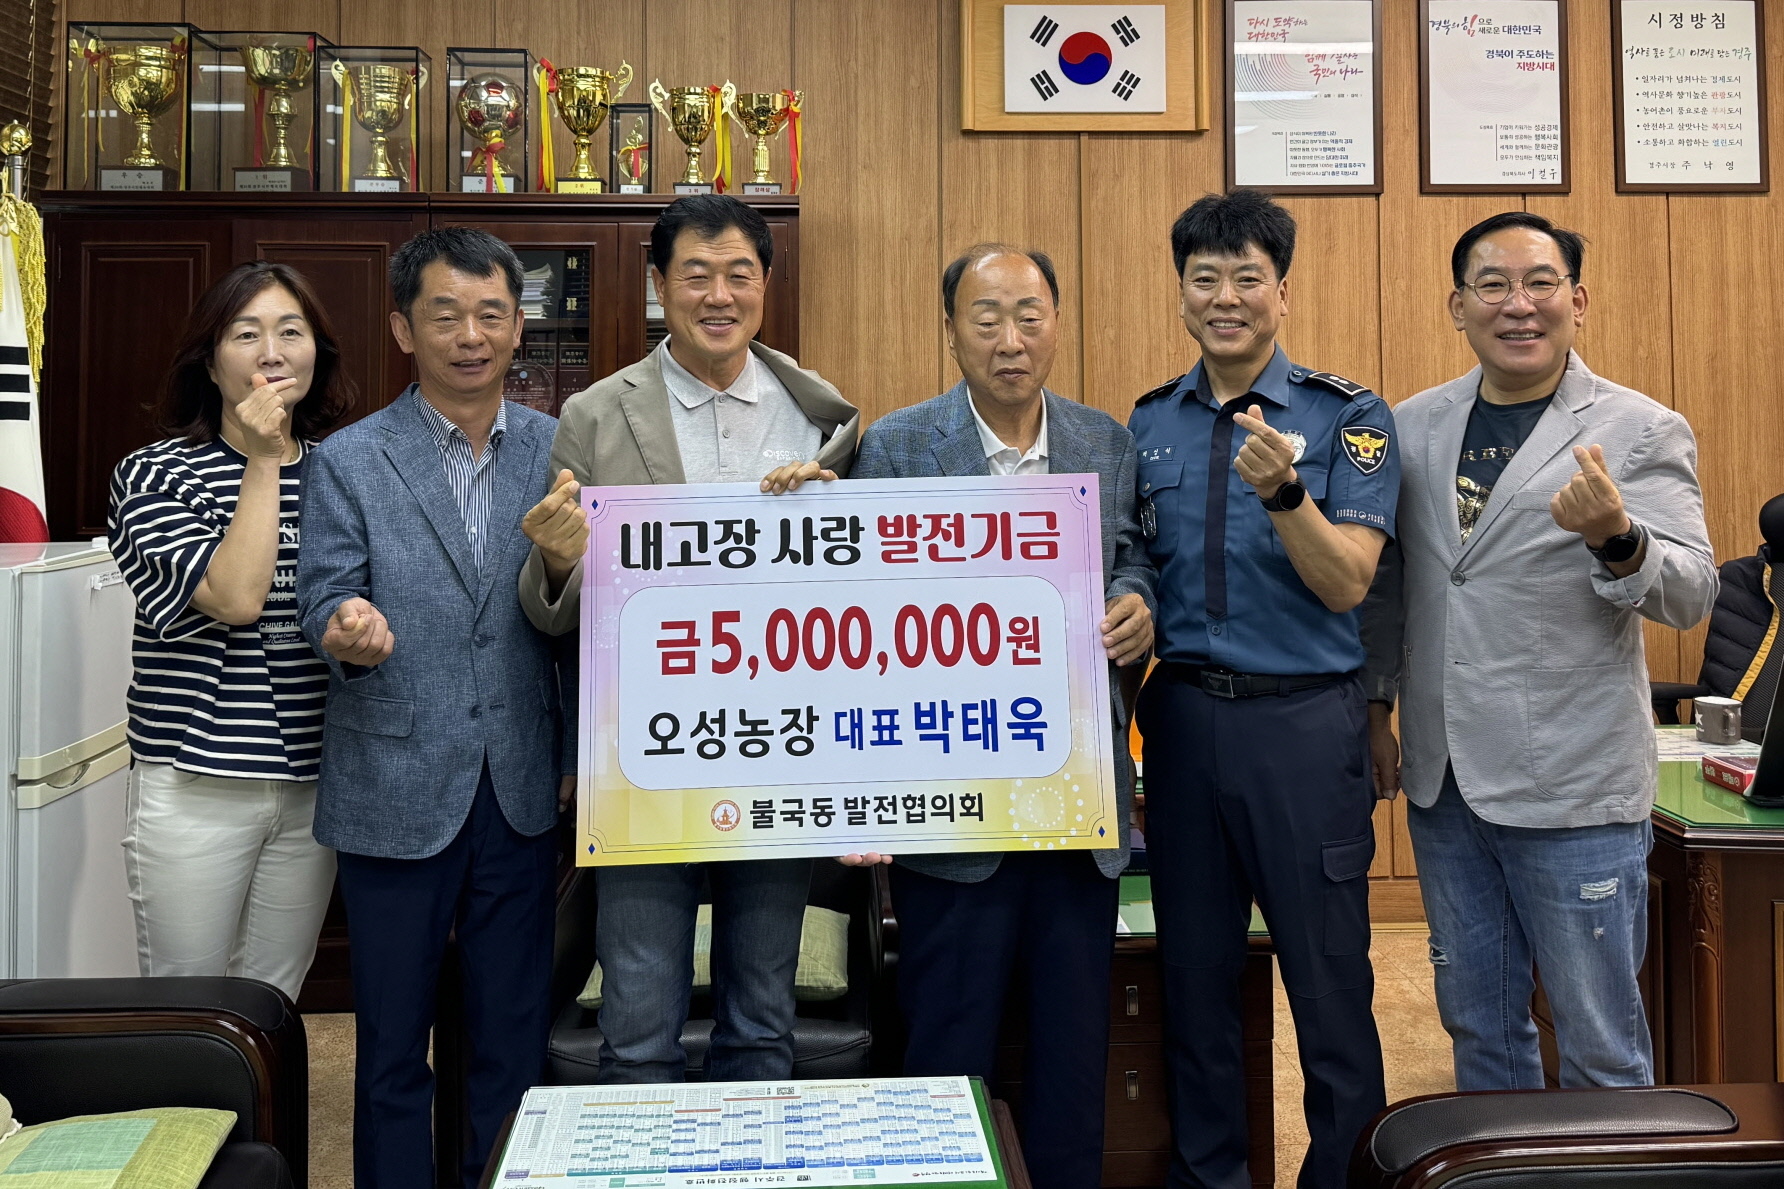 지난 28일 박태욱 오성농장 대표가 고향 불국동의 발전을 위해 불국동 발전협의회에 발전기금 500만원을 전달했다.